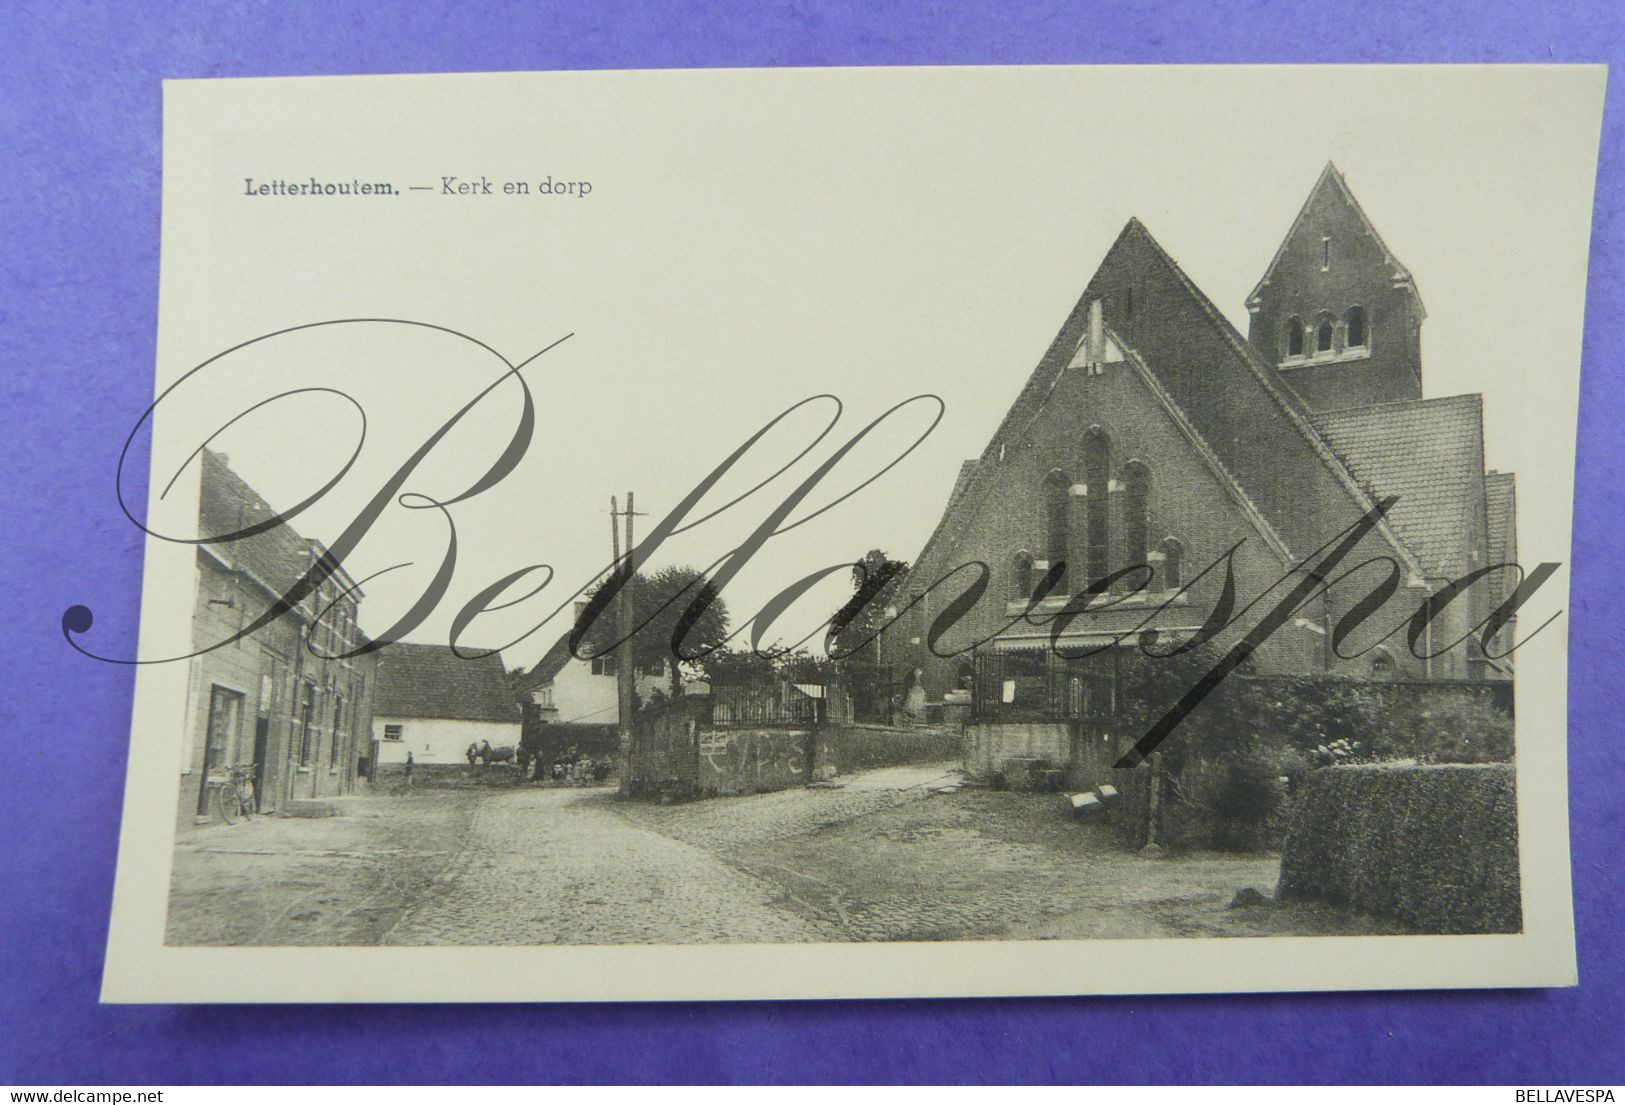 Letterhoutem Kerk En Dorp. Sint-Lievens-Houtem. - Sint-Lievens-Houtem